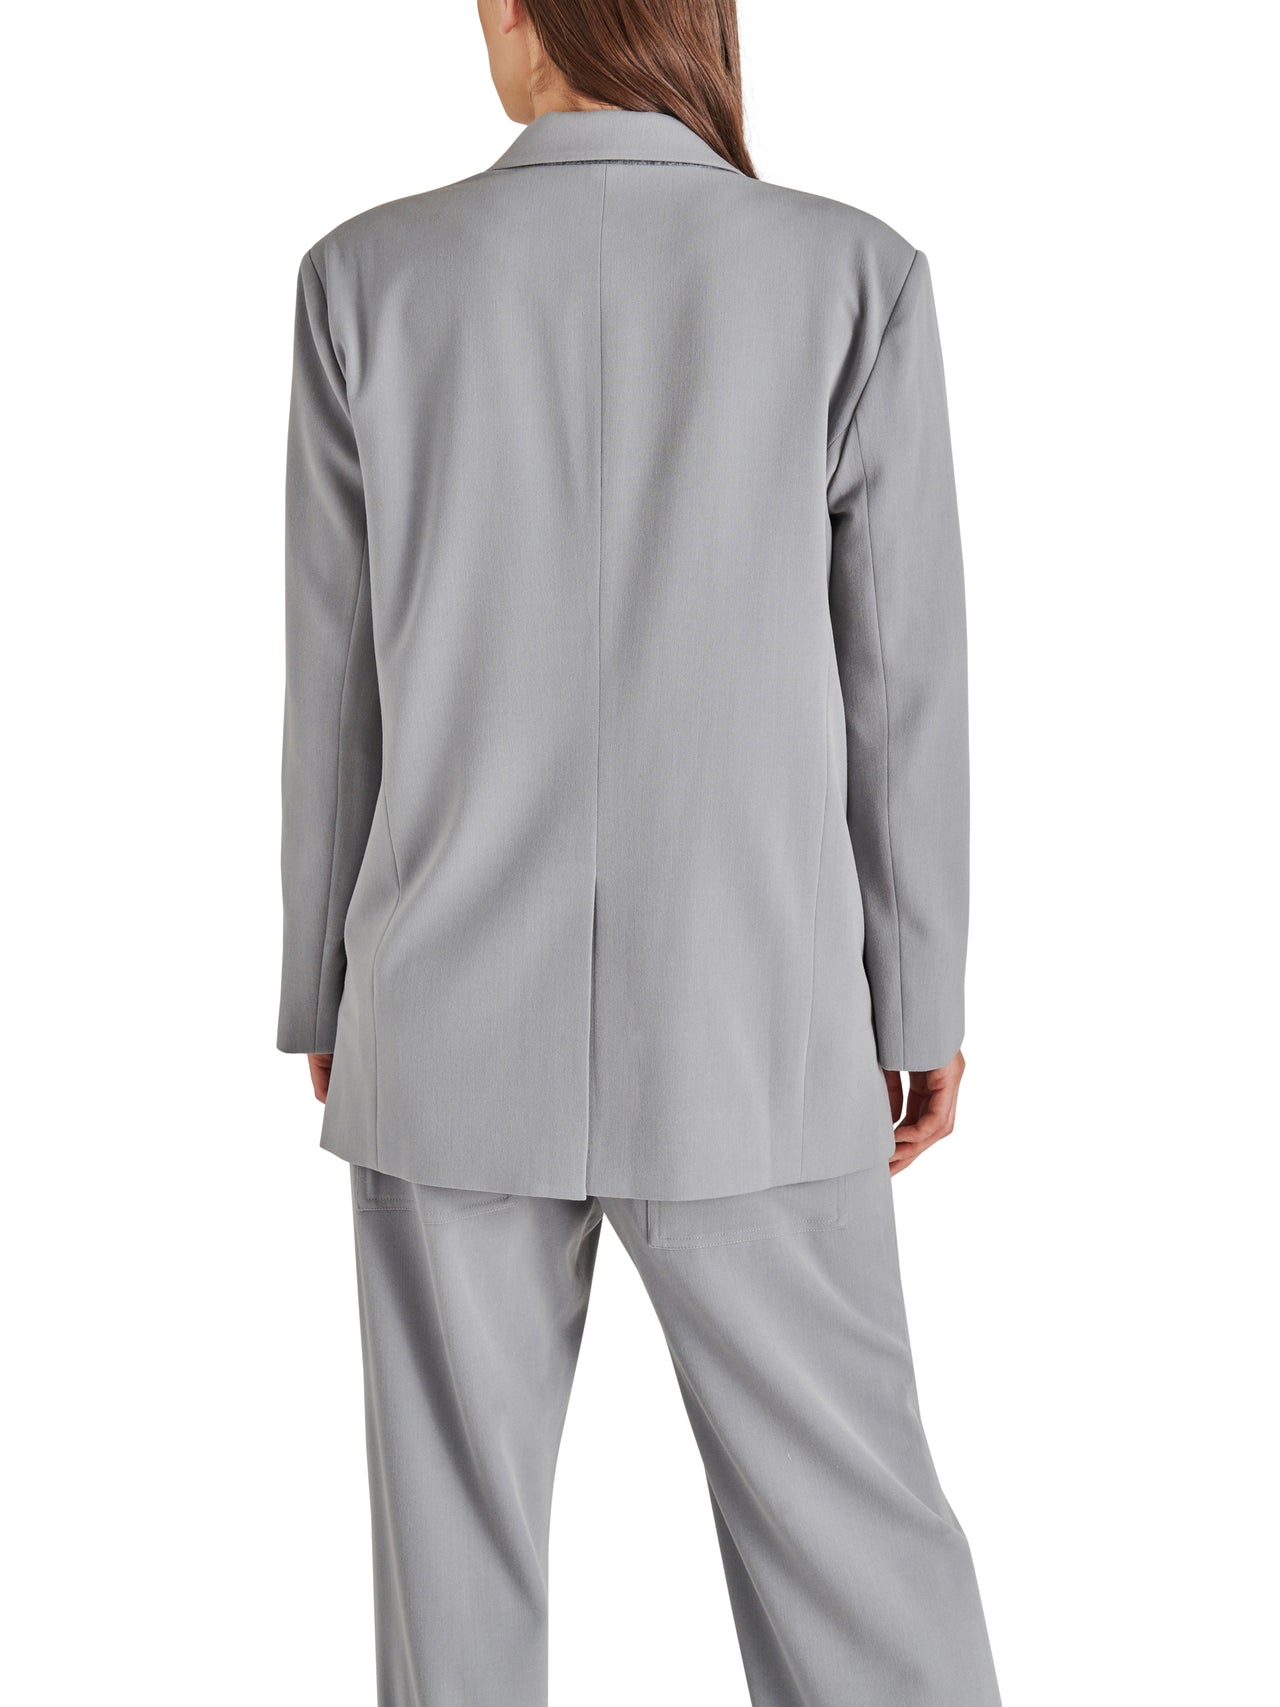 Imaan Blazer, Blazer Jacket by Steve Madden | LIT Boutique